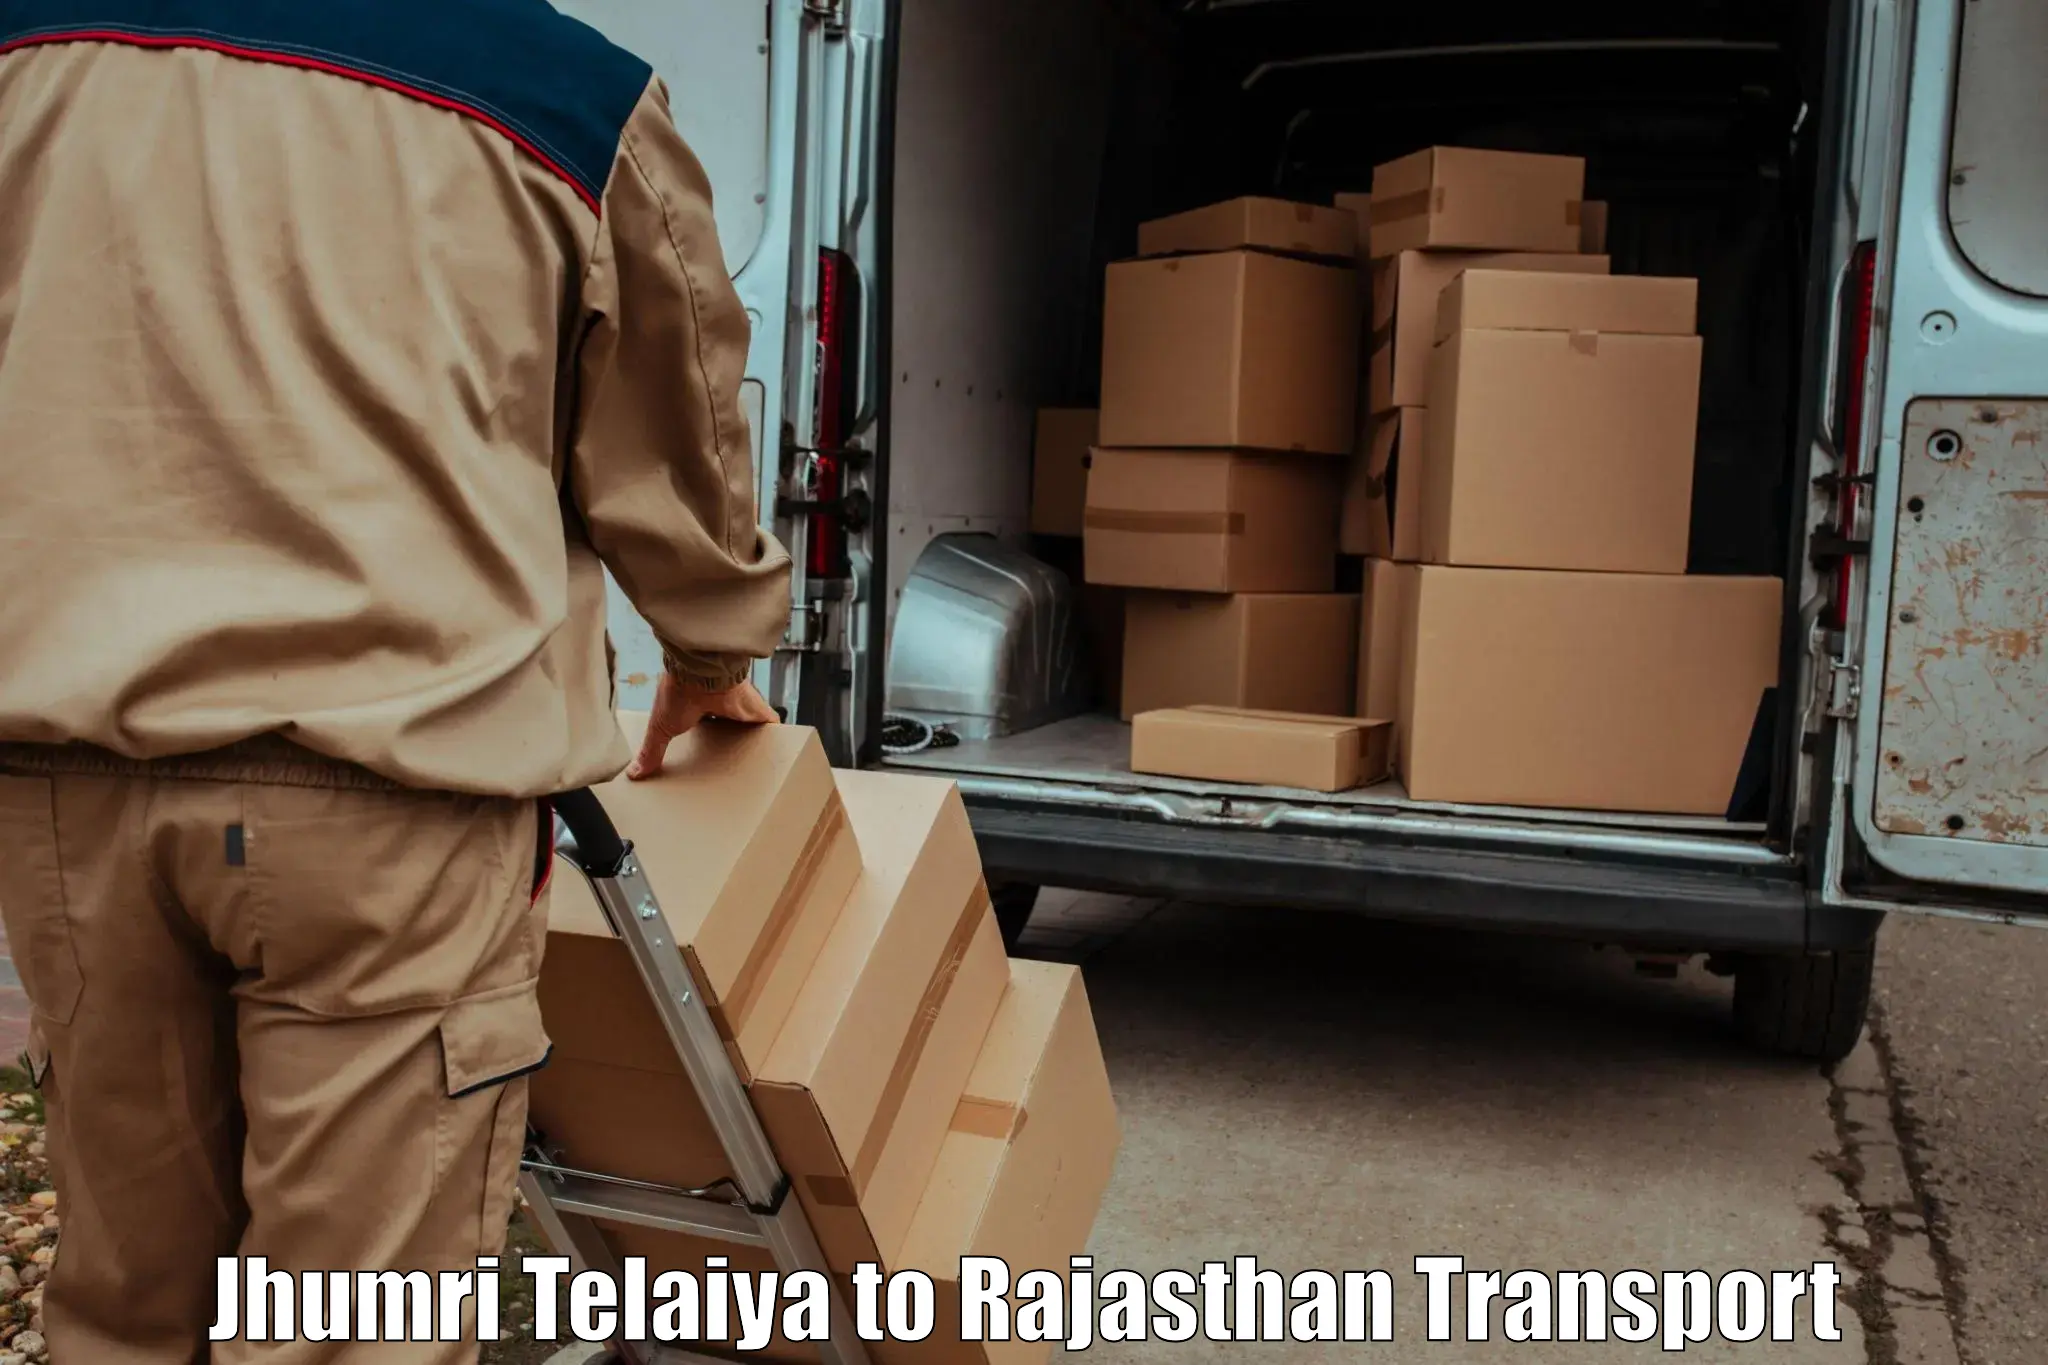 Shipping services Jhumri Telaiya to Udaipur